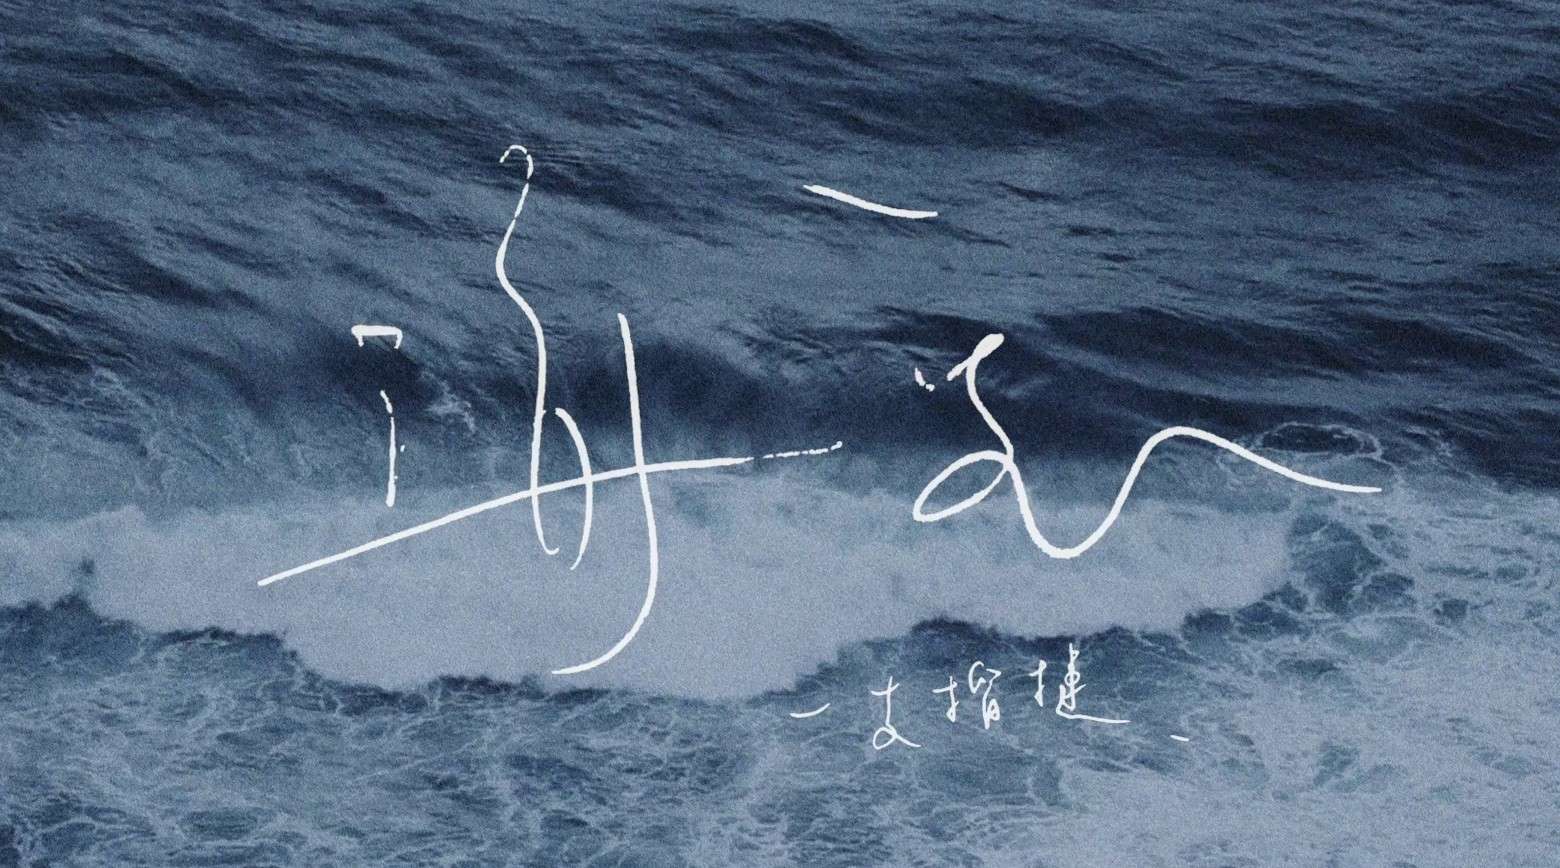 【MV】海底 - Seabed